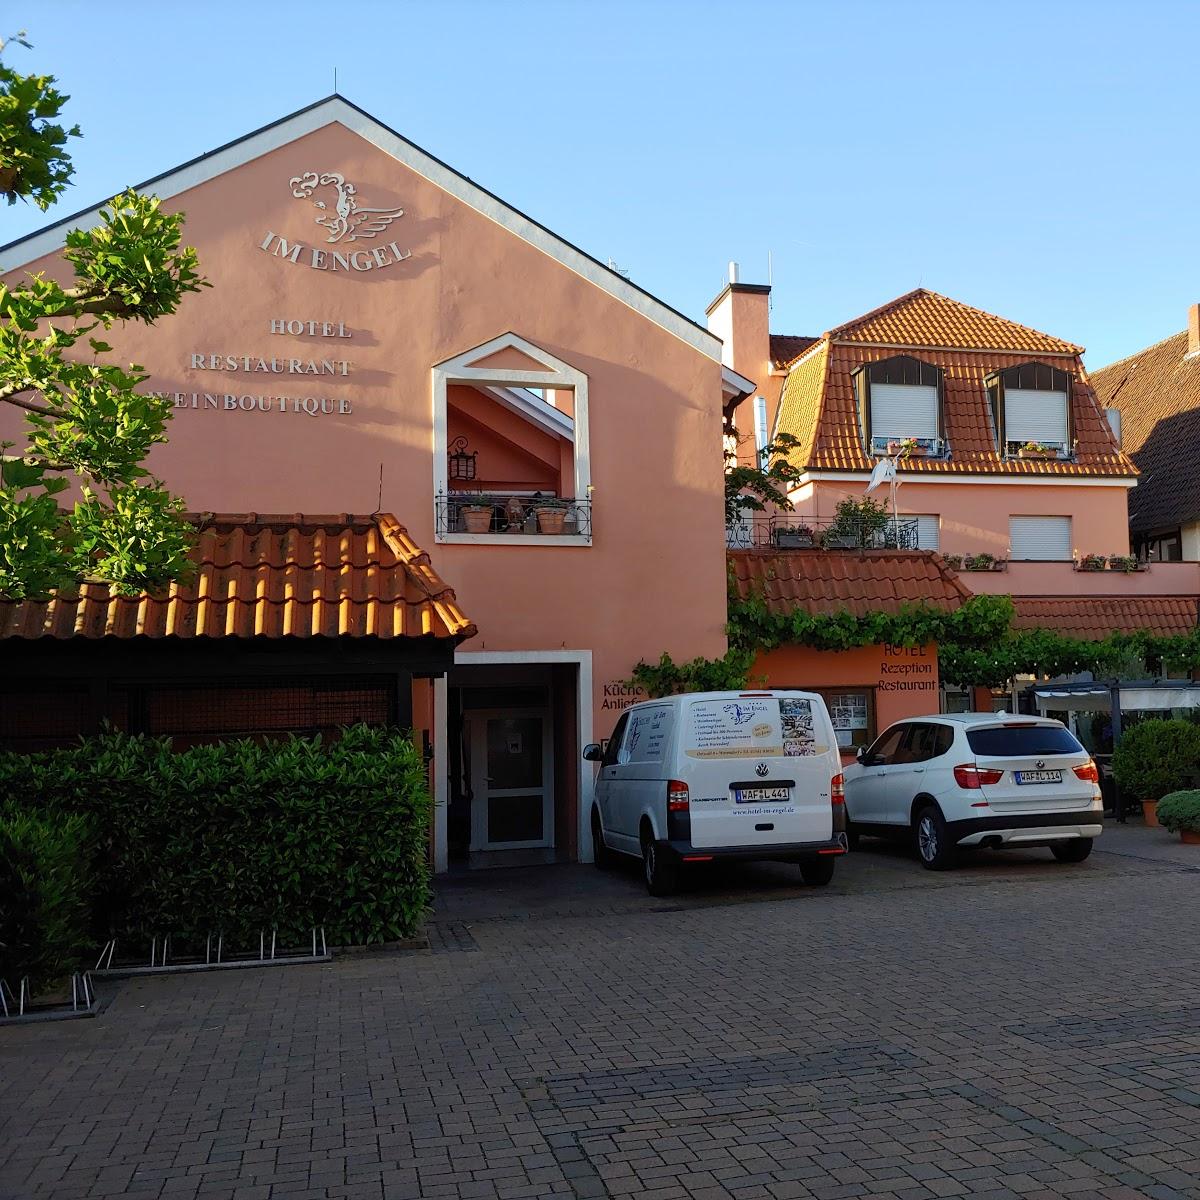 Restaurant "Hotel Im Engel" in Warendorf